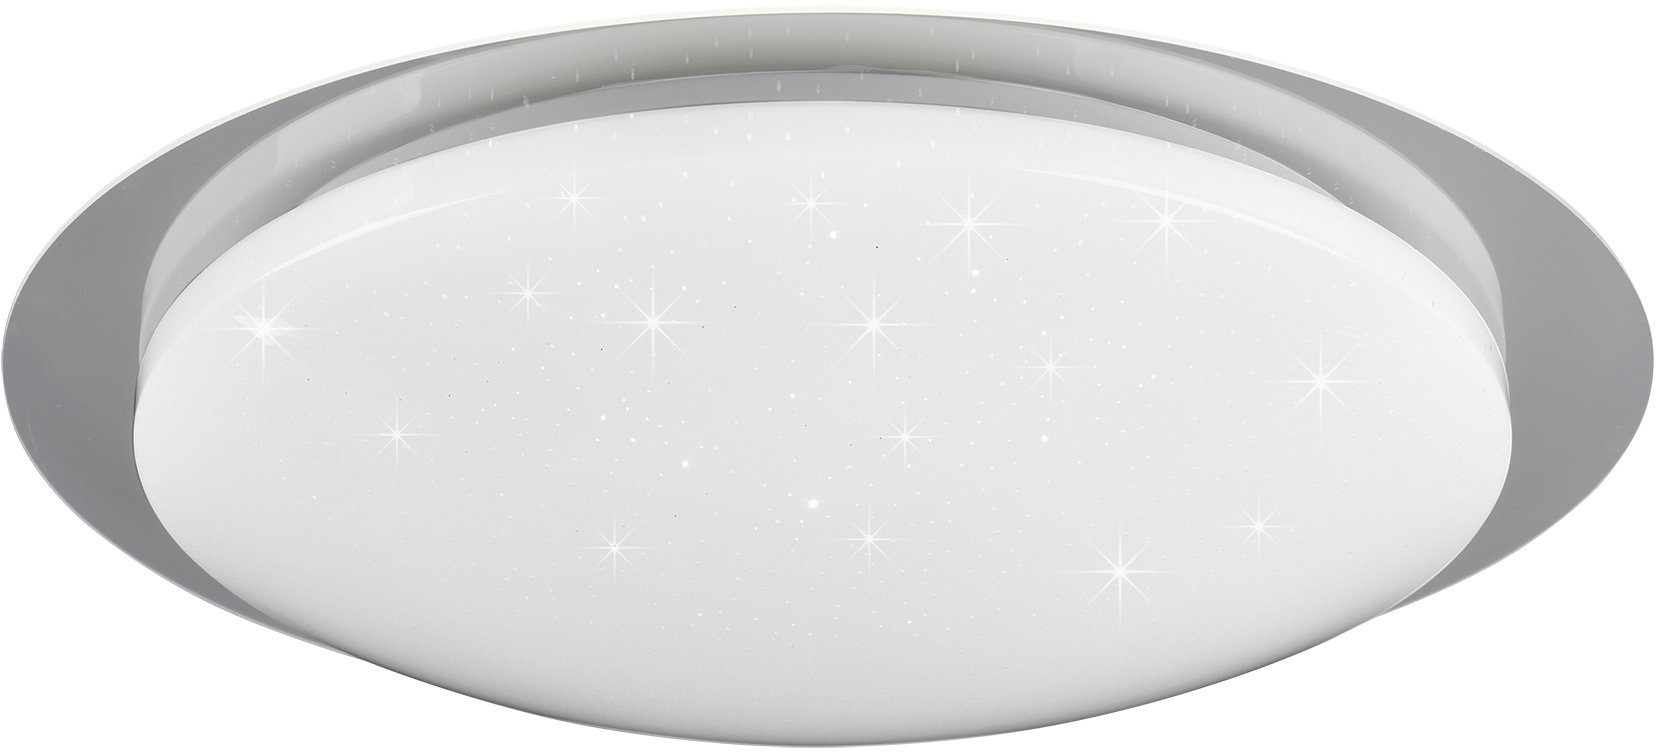 TRIO Leuchten LED getrennt fest Helligkeitsstufen, LED cm Deckenleuchte mit integriert, Dimmer, Farbwechsler, mehrere Ø 48 Fernbed., Backlight, RGB Starlight-Effekt, schaltbar, Dimmer Joleen, inkl